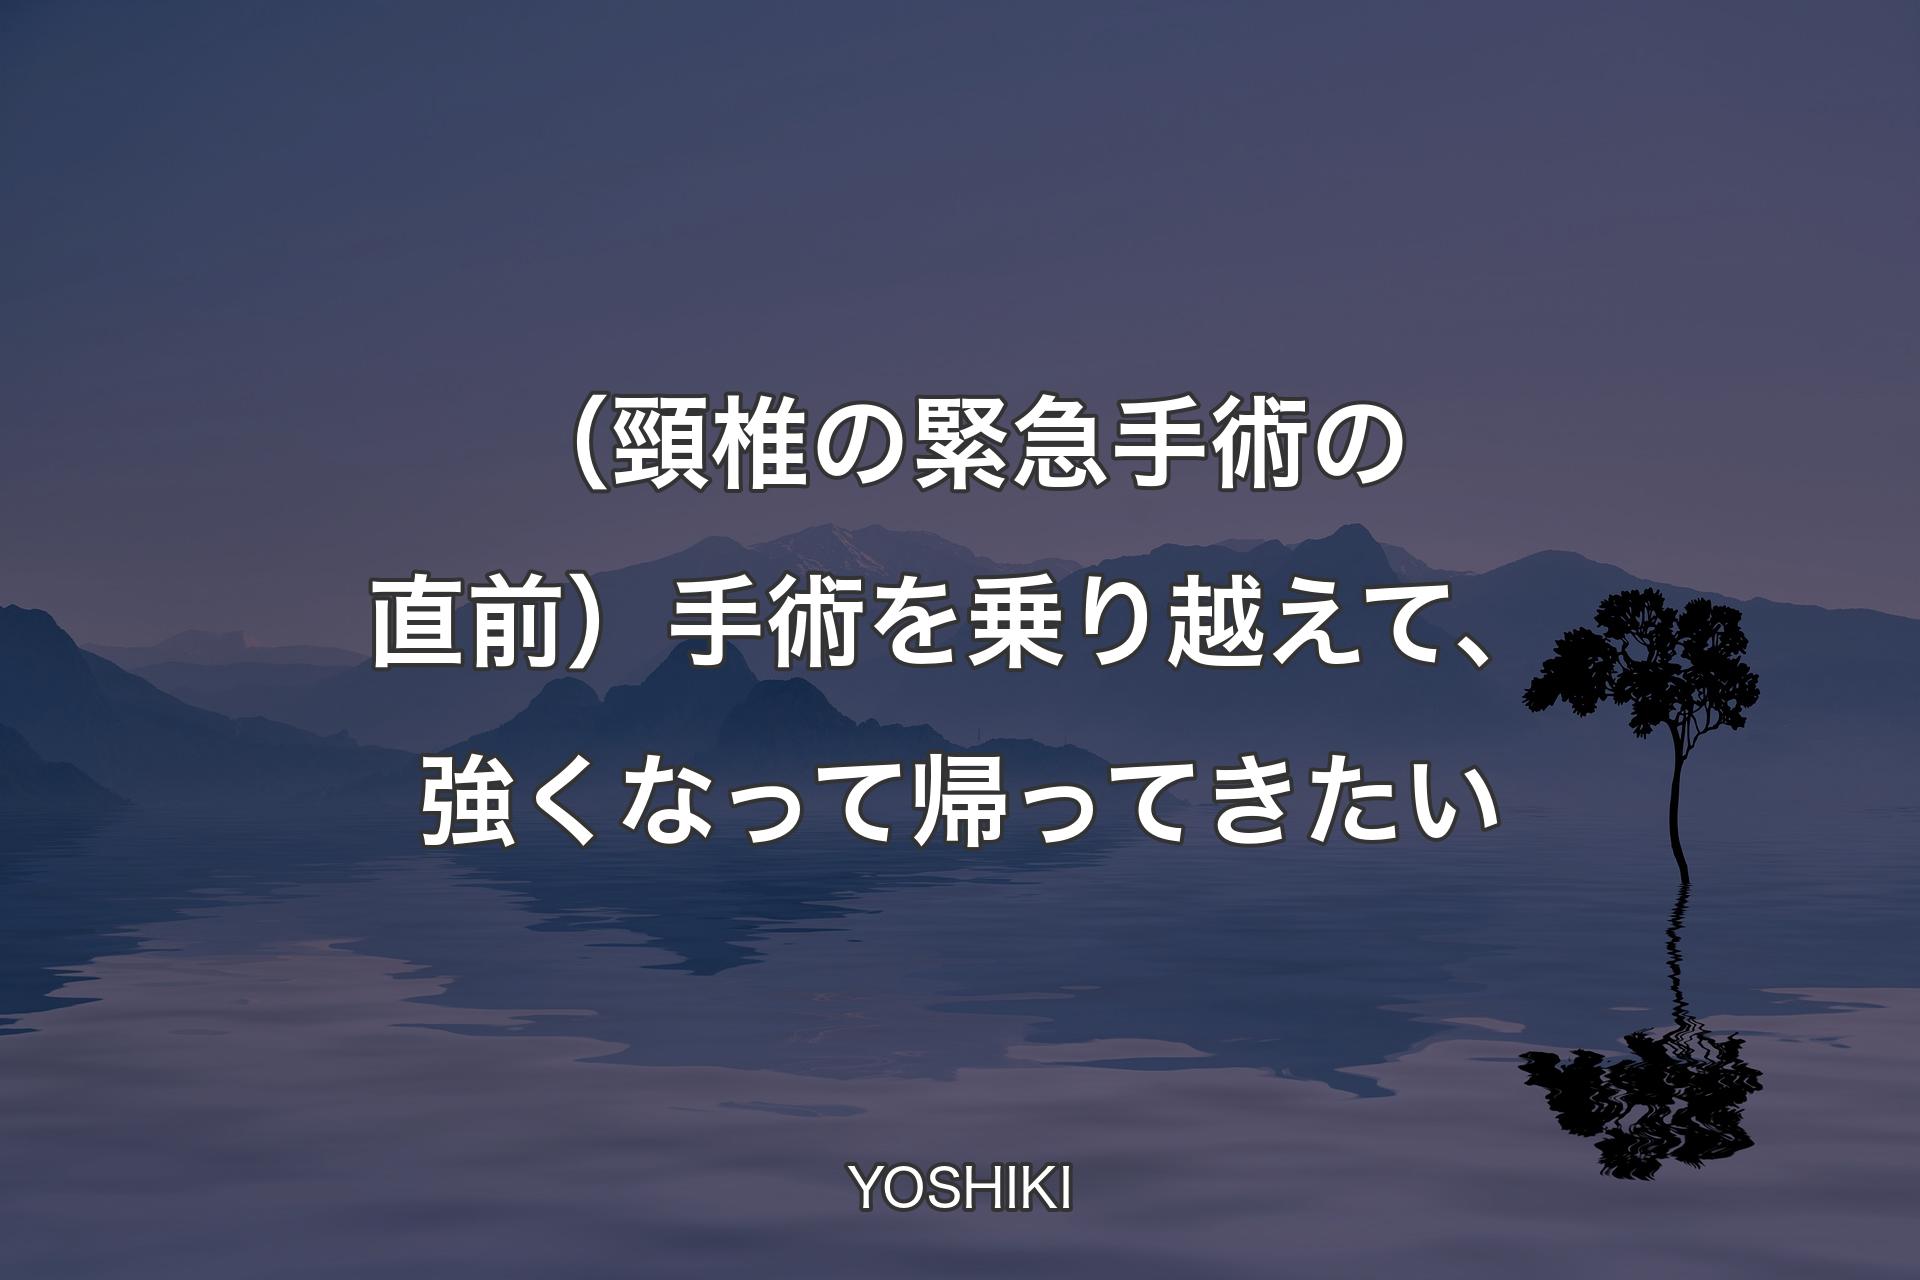 【背景4】（頸�椎の緊急手術の直前）手術を乗り越えて、強くなって帰ってきたい - YOSHIKI